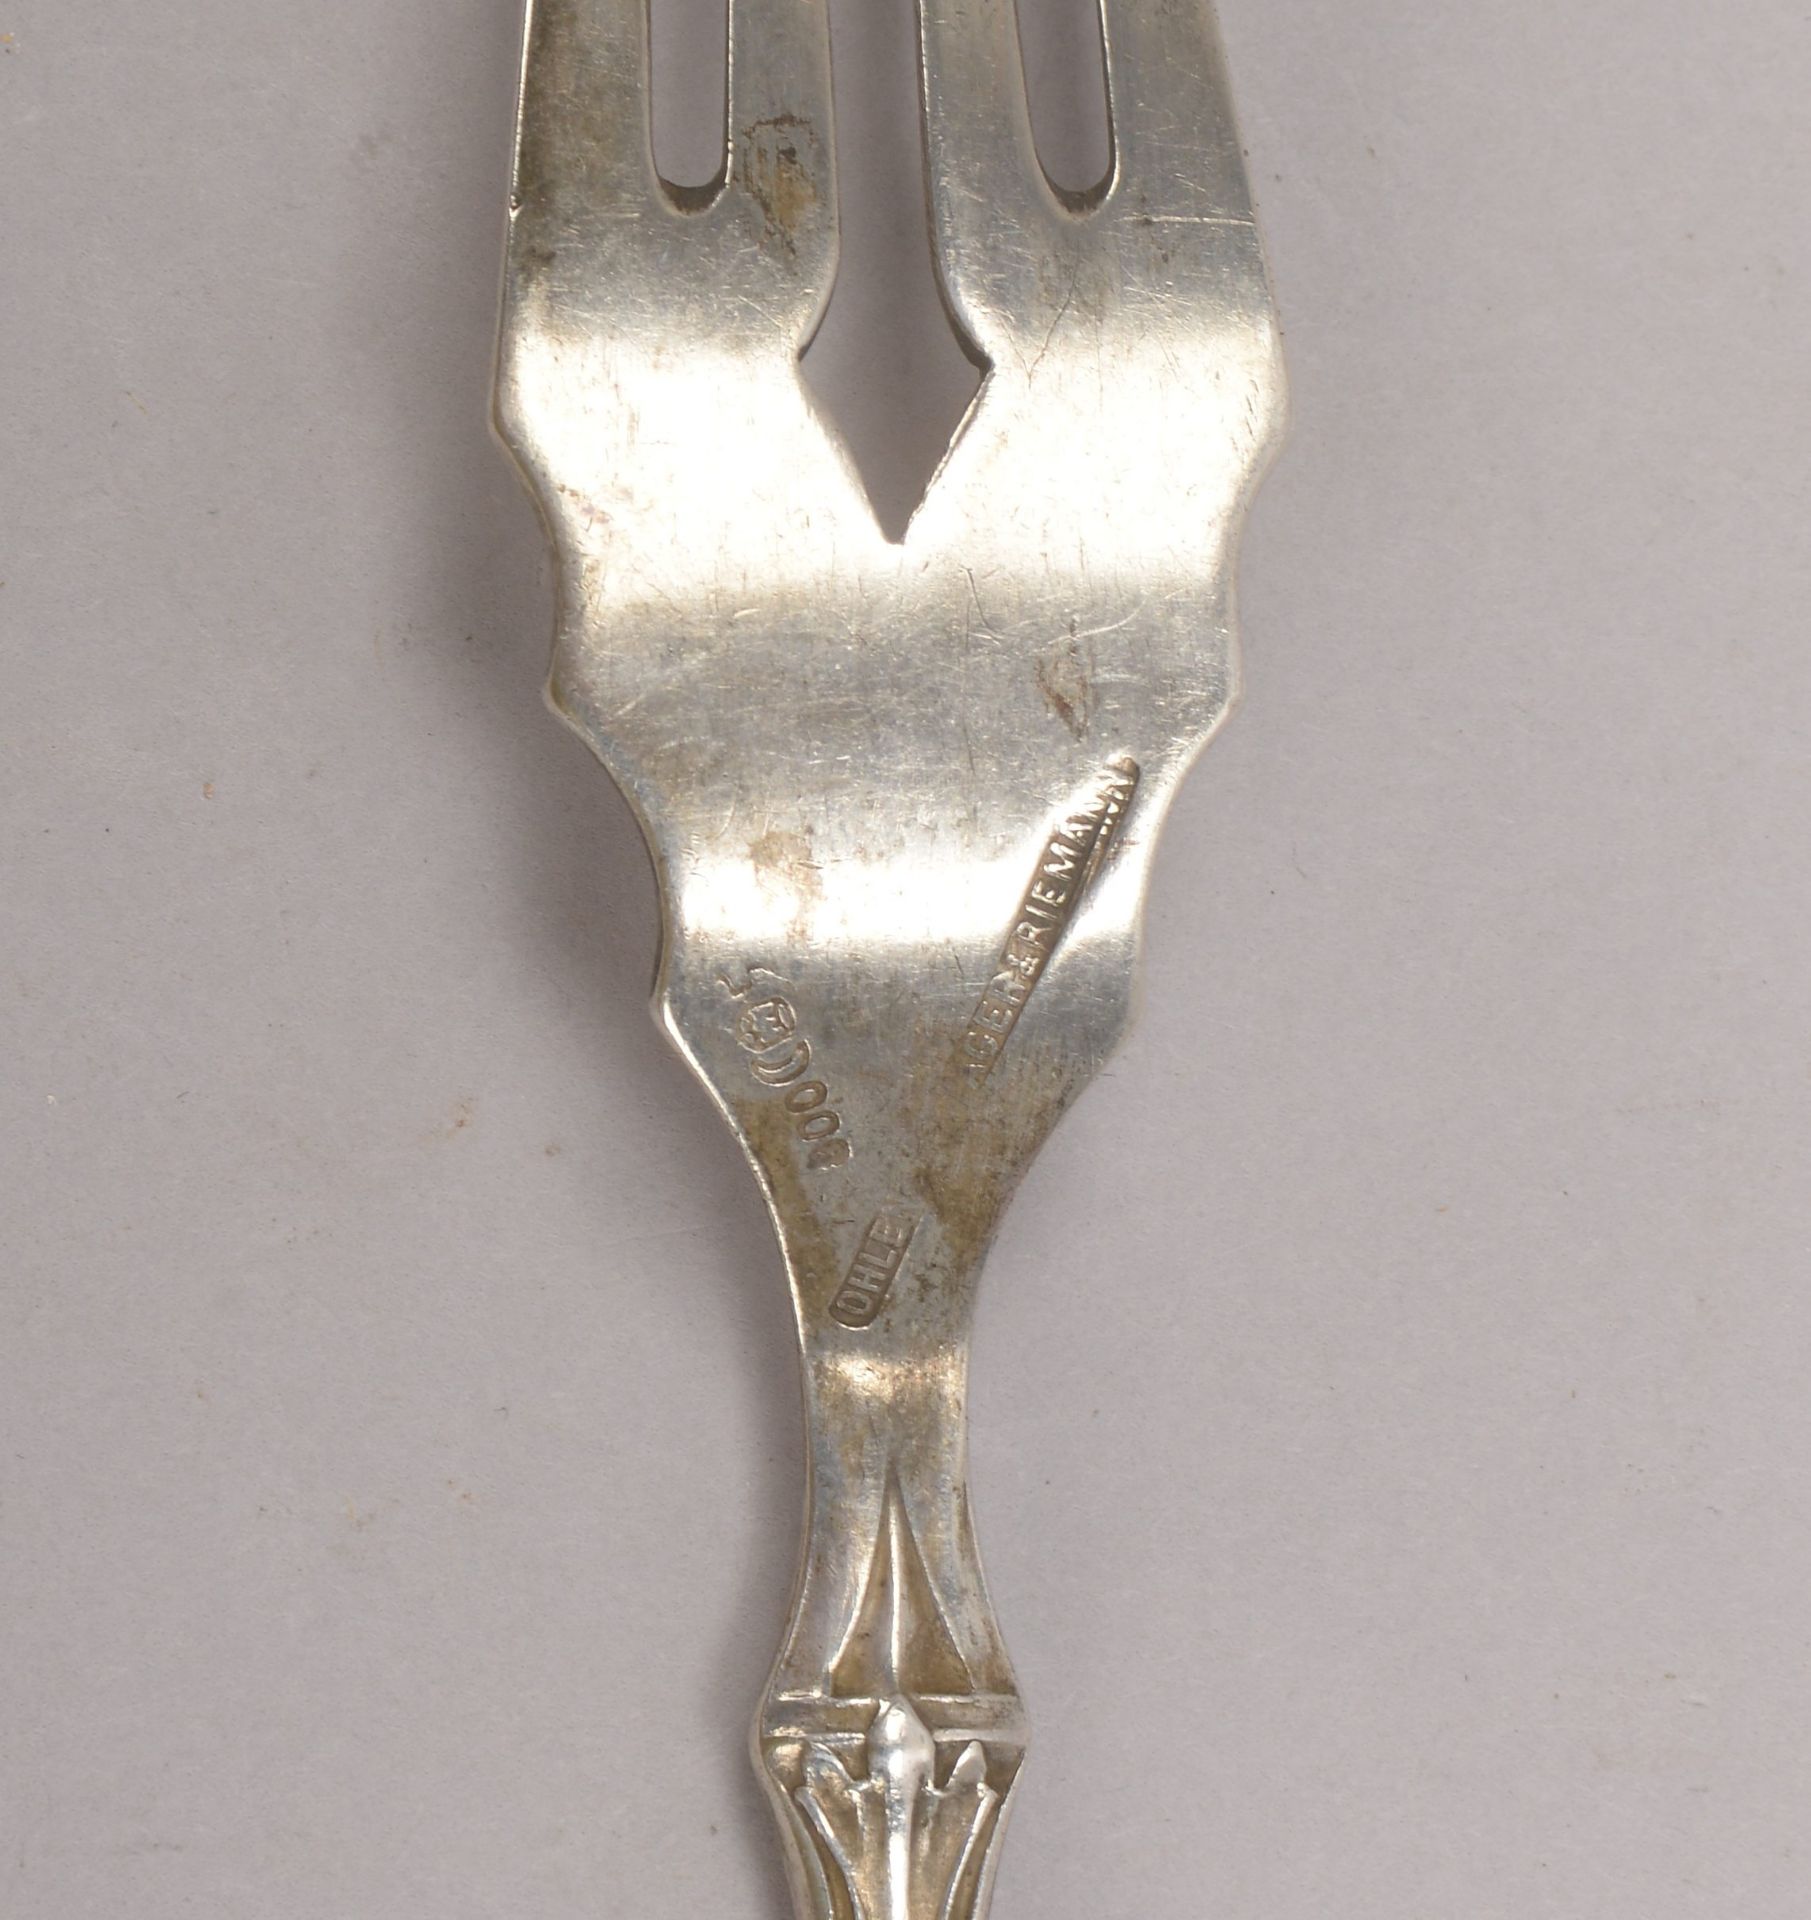 Antikes Fischbesteck, 800 Silber, 8-teilig: 5x Messer und 3x Gabeln; dazu einzelner feiner Fischhebe - Bild 2 aus 2